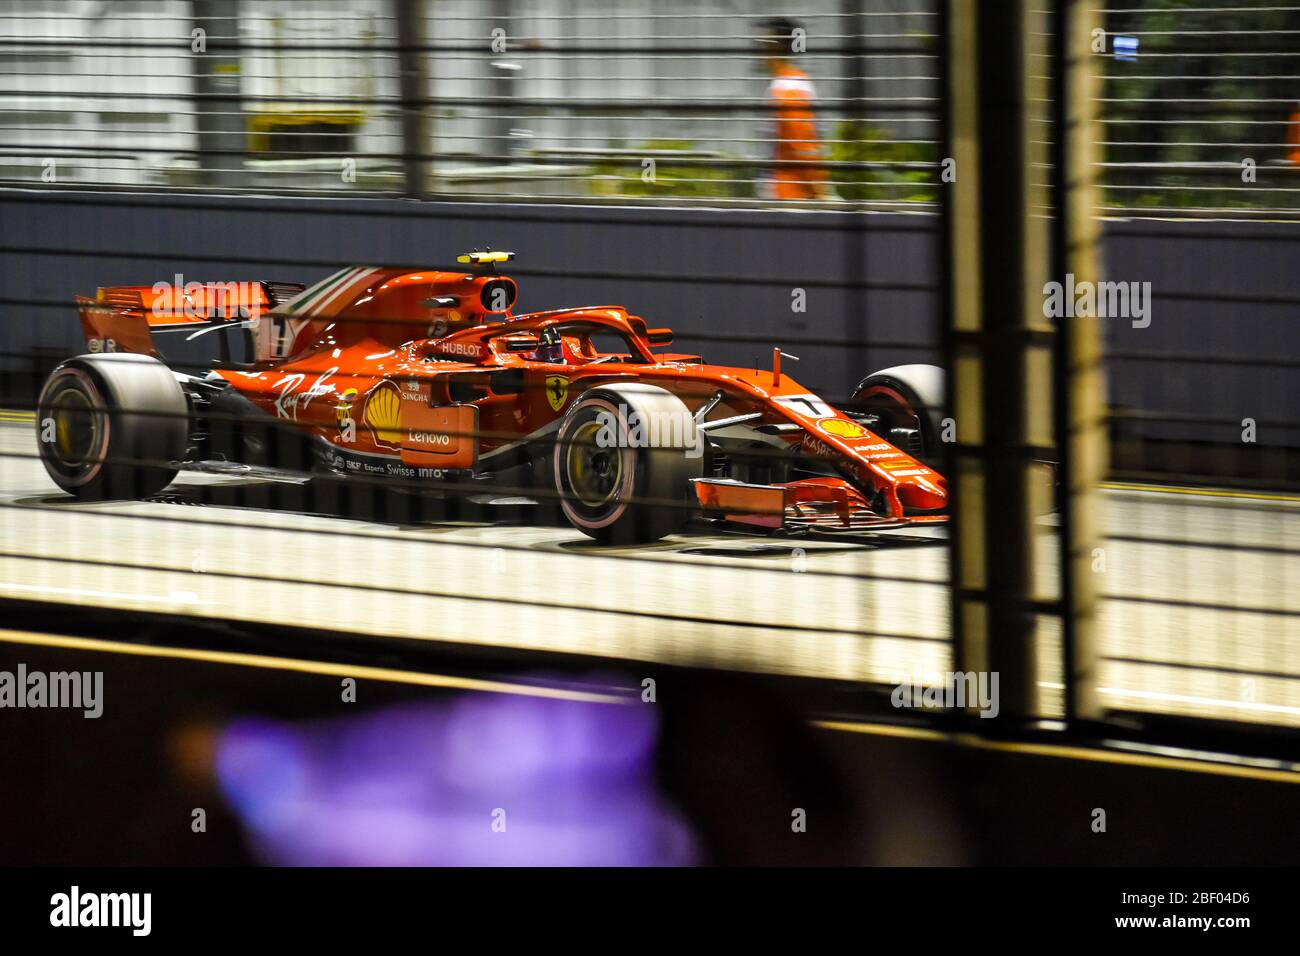 Kimi Raikkonen en el Gran Premio F1 de Singapur 2018 Foto de stock